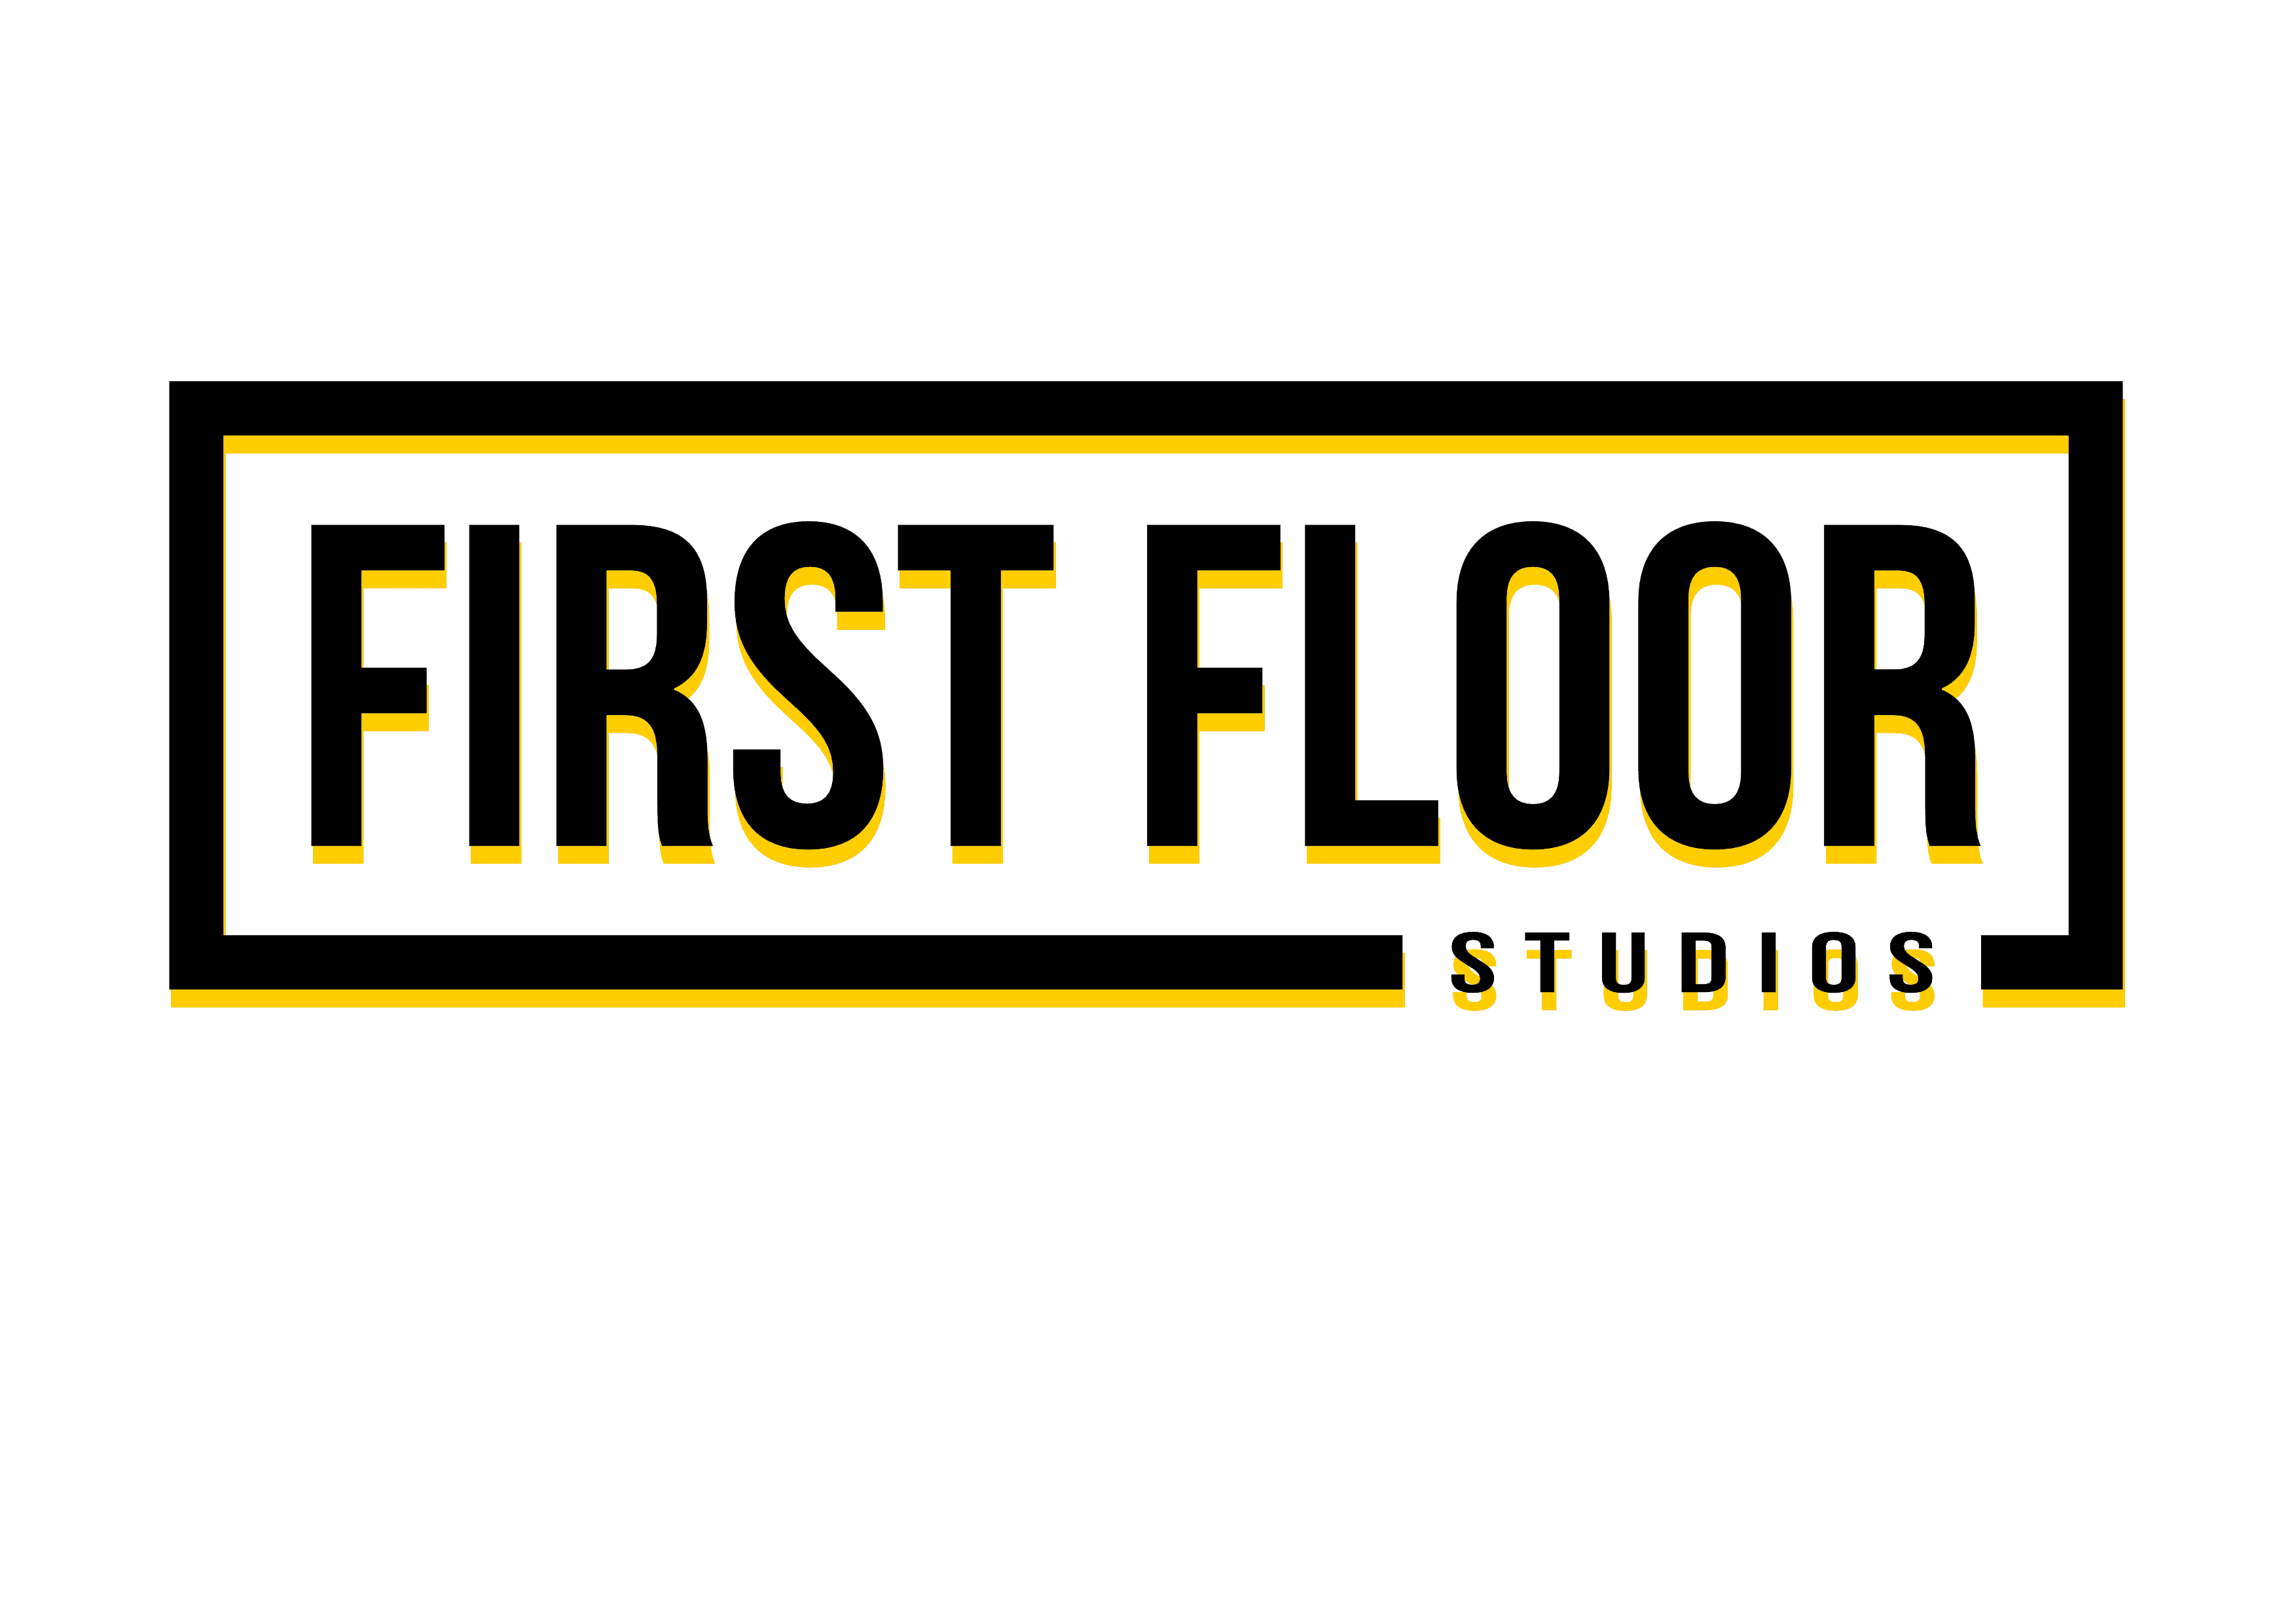 First Floor Studios